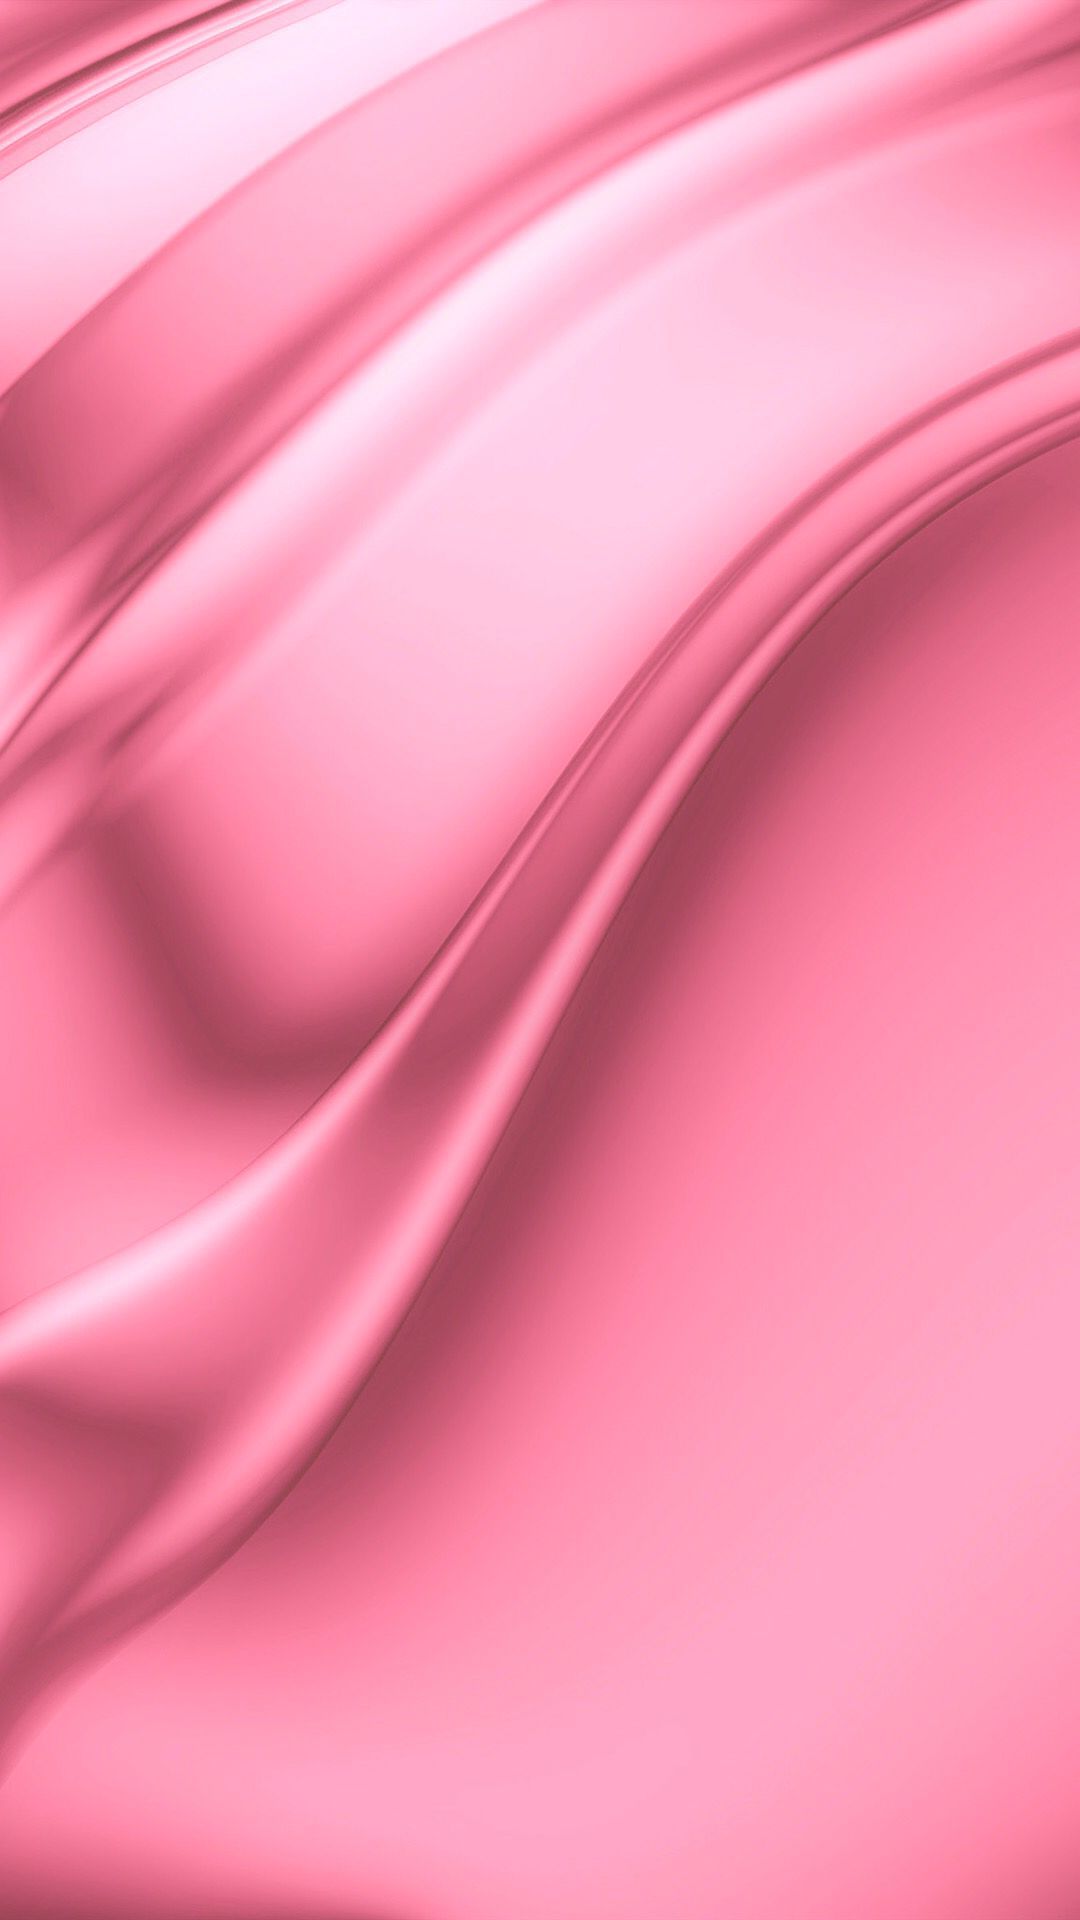 Papel pintado rosado brillante | * Papel pintado rosa y flores | Papel tapiz rosa